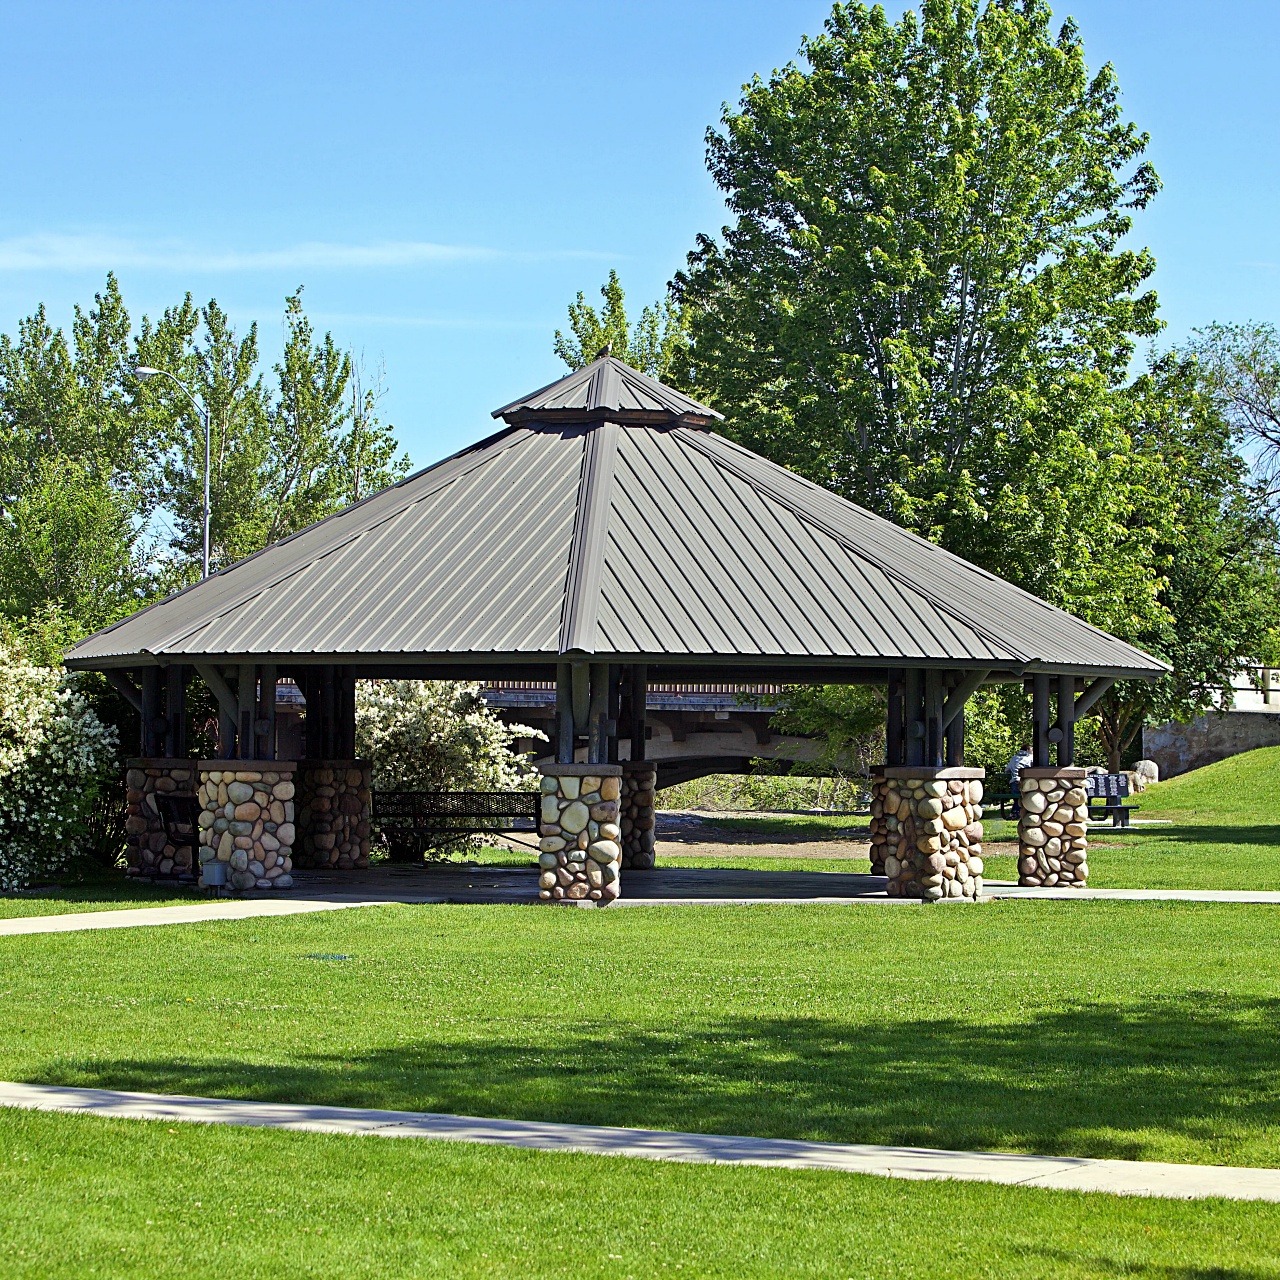 Photo of a Gazebo in Veterans Memorial Park